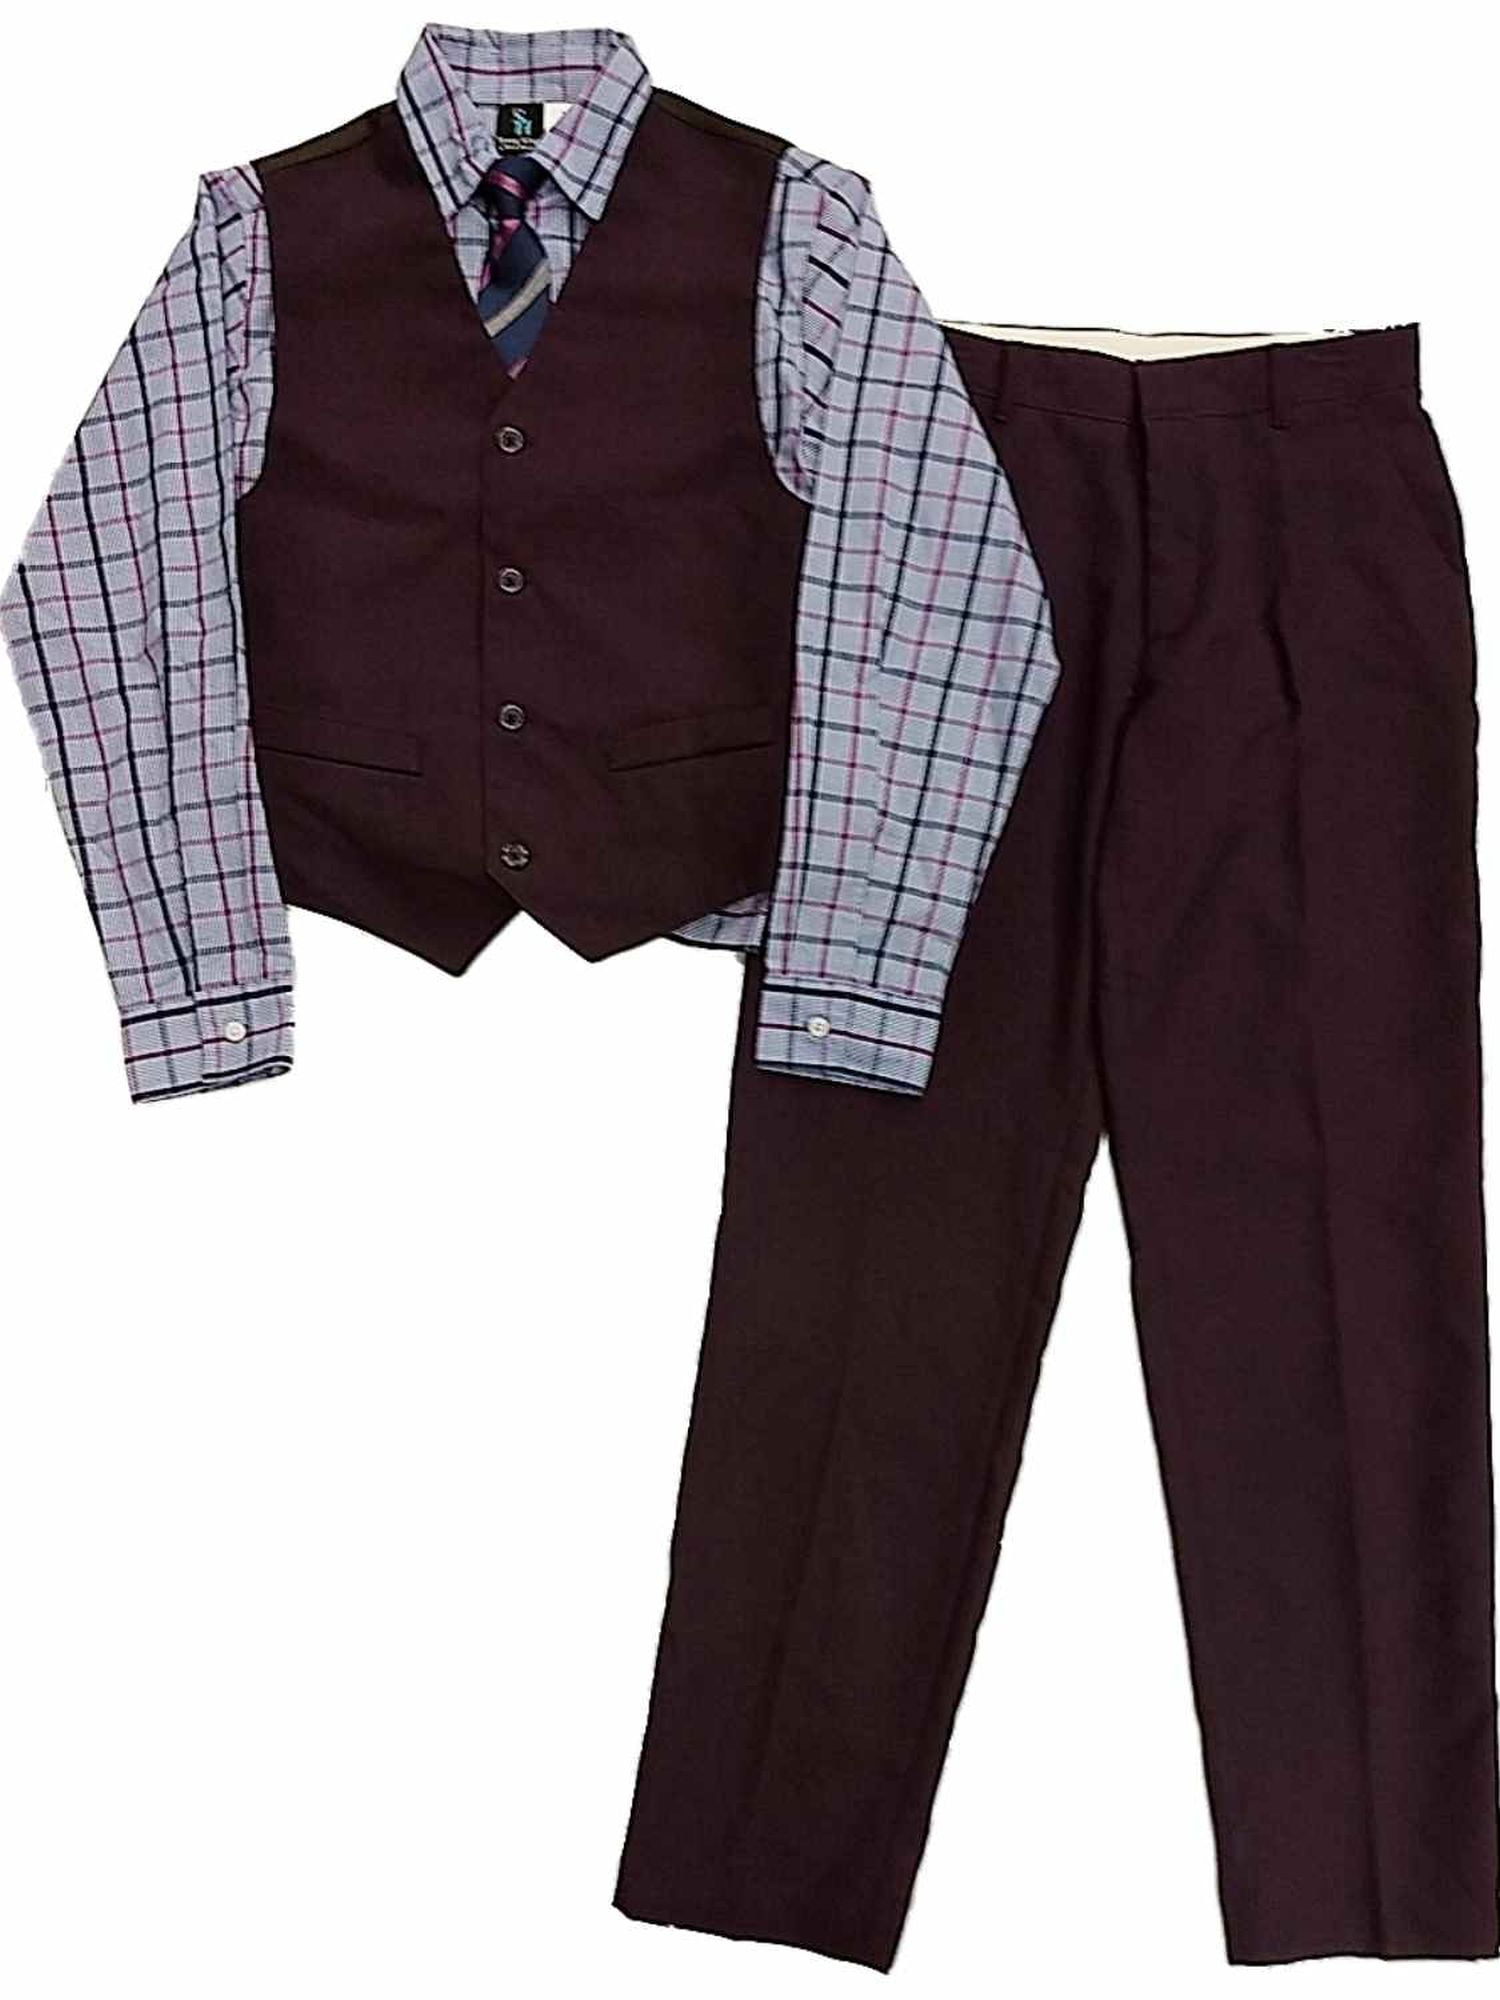 Dockers Infant & Toddler Boys 4pc Dress Up Outfit Melon Shirt Vest Tie & Pants 